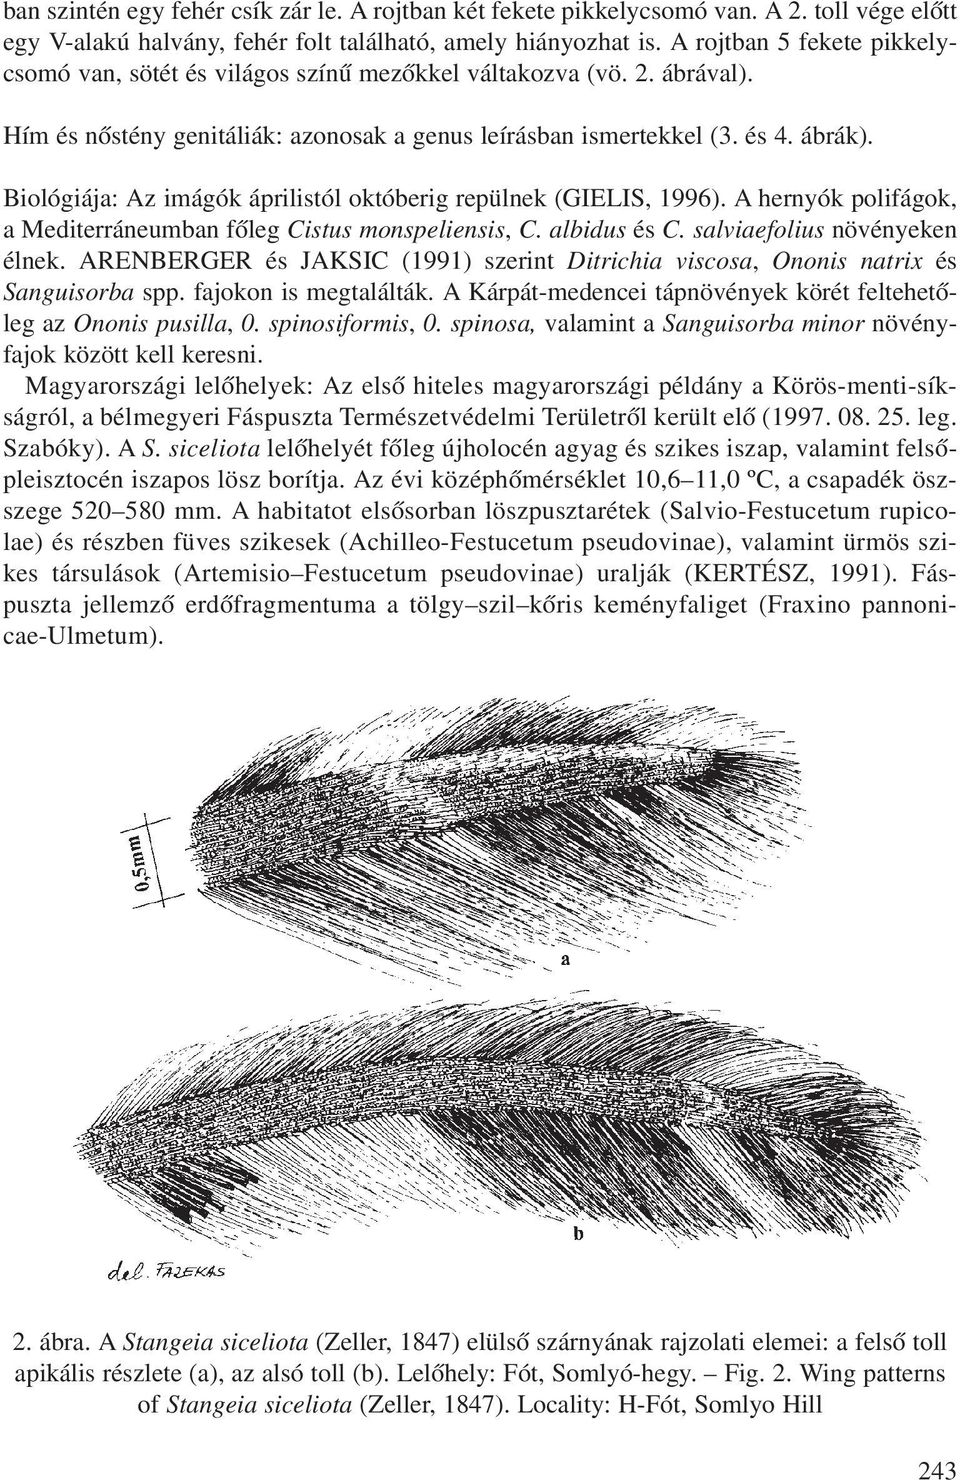 Biológiája: Az imágók áprilistól októberig repülnek (GIELIS, 1996). A hernyók polifágok, a Mediterráneumban fõleg Cistus monspeliensis, C. albidus és C. salviaefolius növényeken élnek.